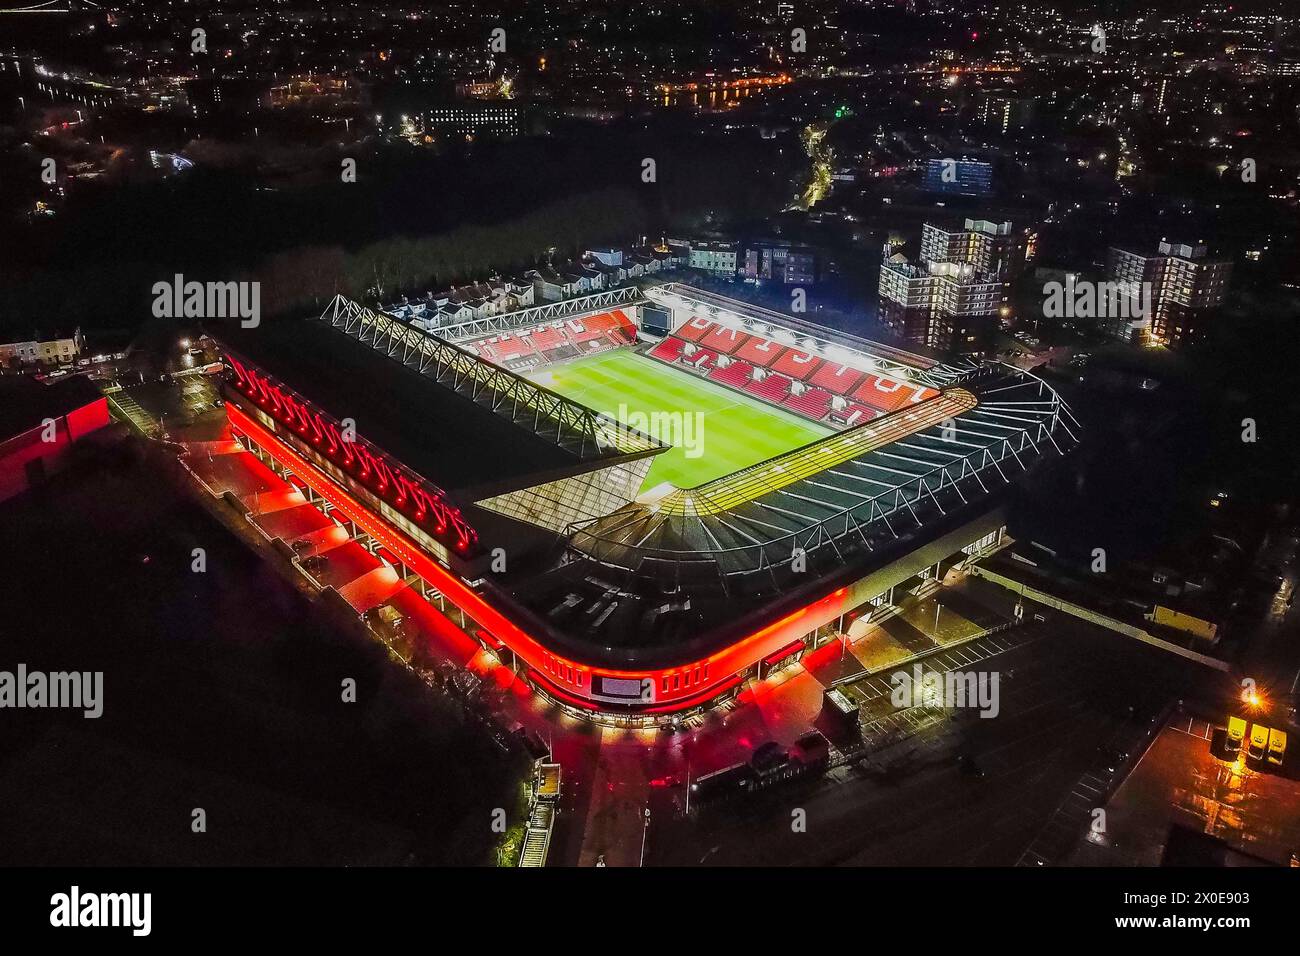 Vista aerea generale dello stadio Ashton Gate illuminato, sede della squadra inglese del campionato di calcio Bristol City e del club di rugby Bristol Bears. Foto Stock